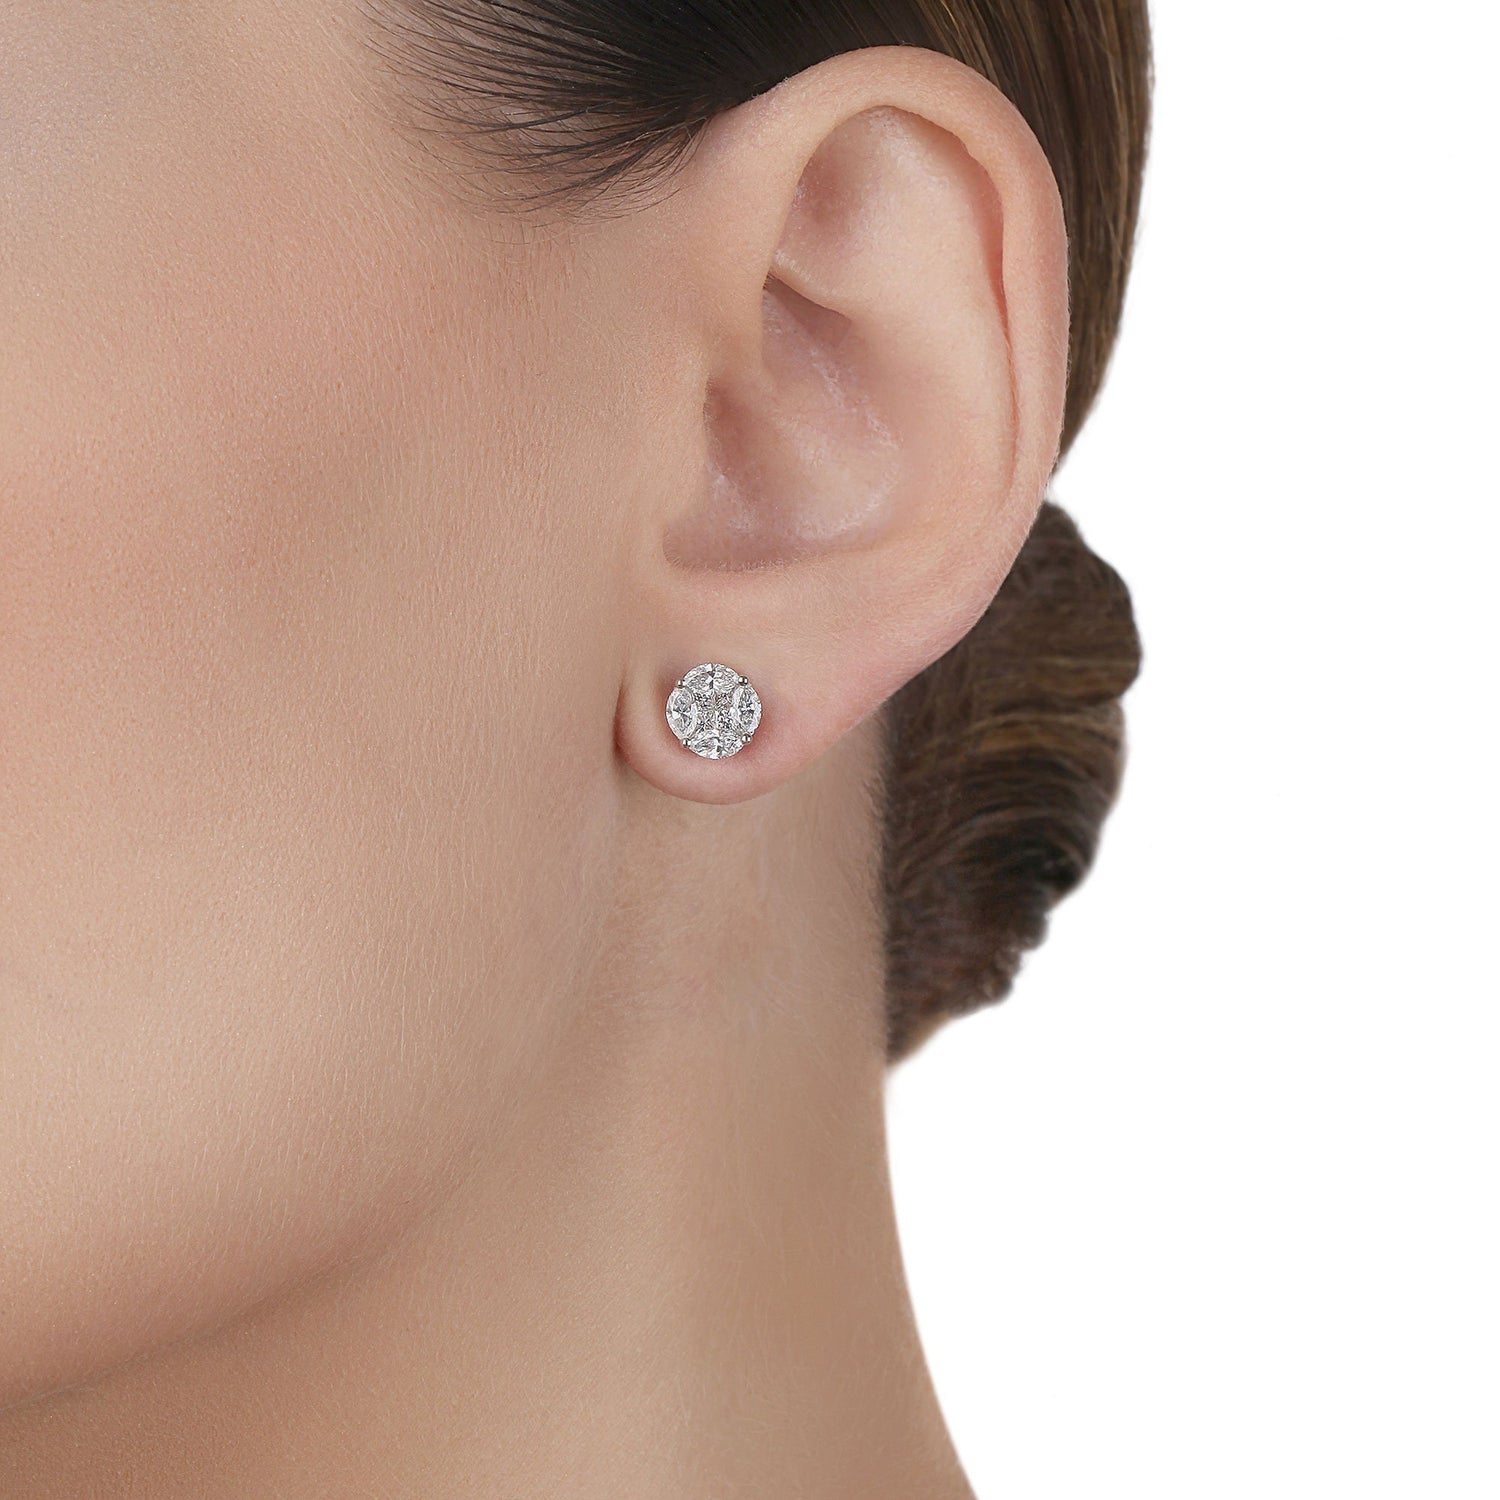 Small Diamond Illusion Stud Earrings | Bridal jewelery set 